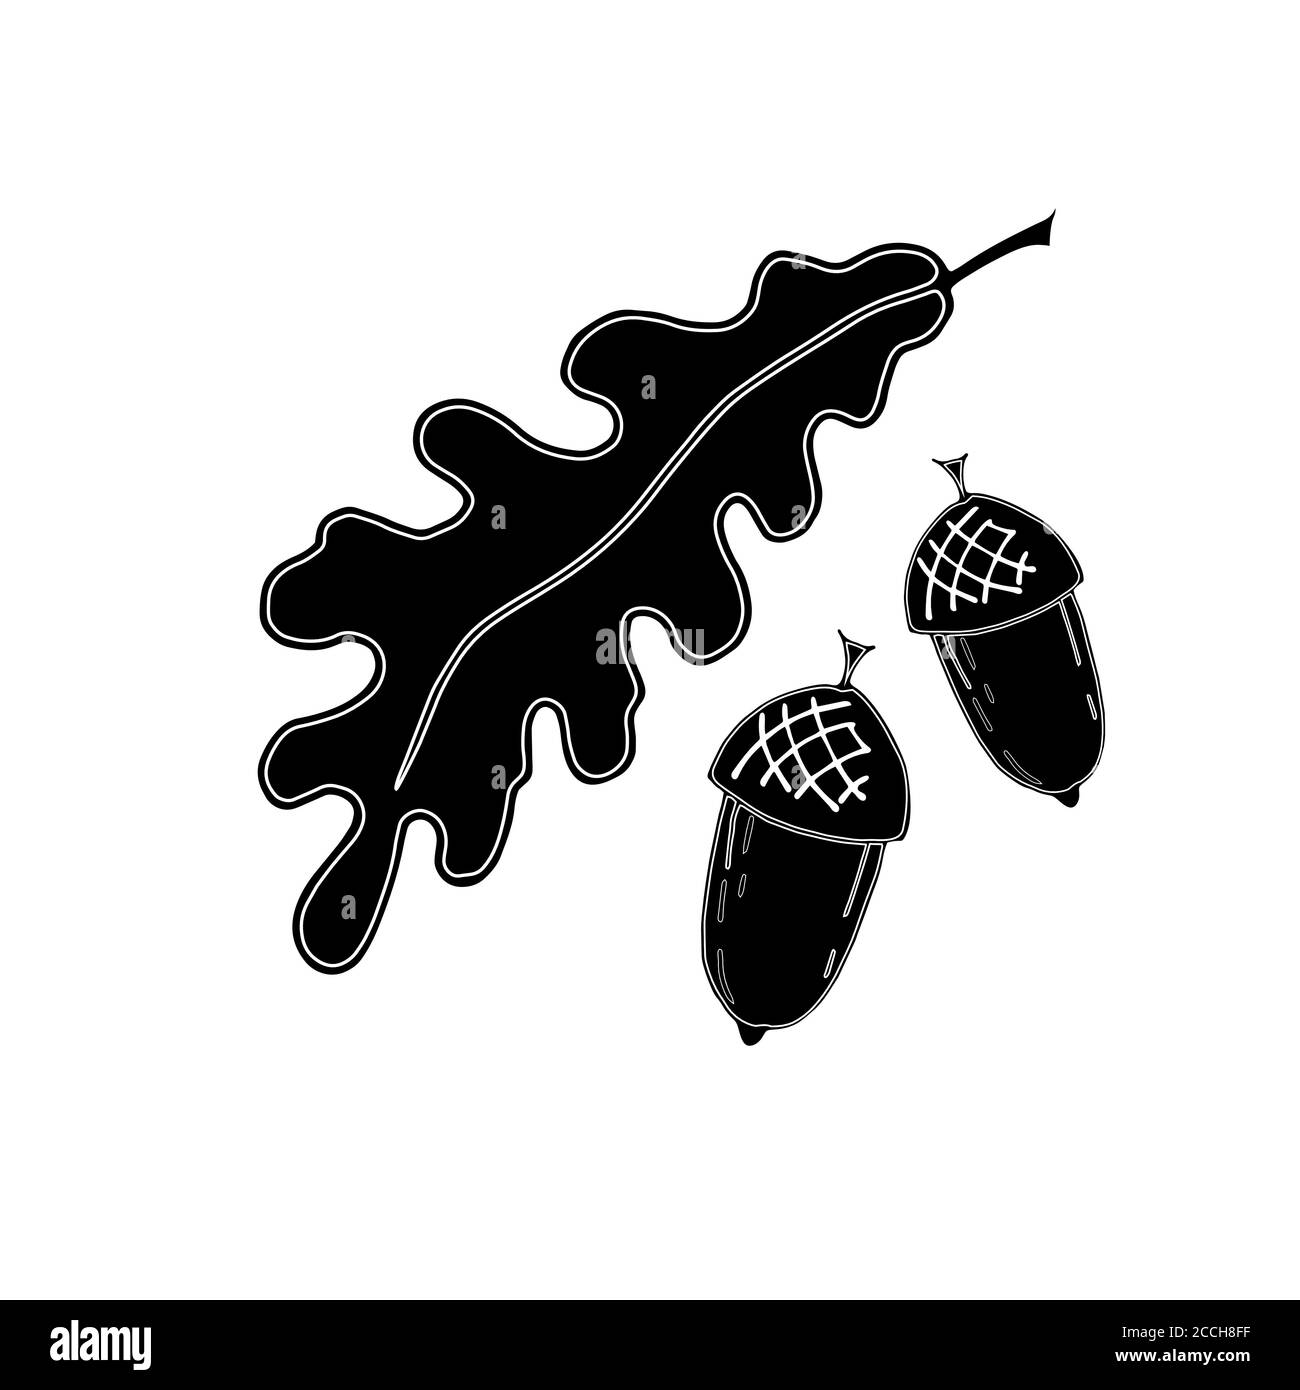 Ensemble d'icônes de feuilles de chêne, acorns. Style d'esquisse tracé à la main, contour blanc, remplissage noir Illustration de Vecteur